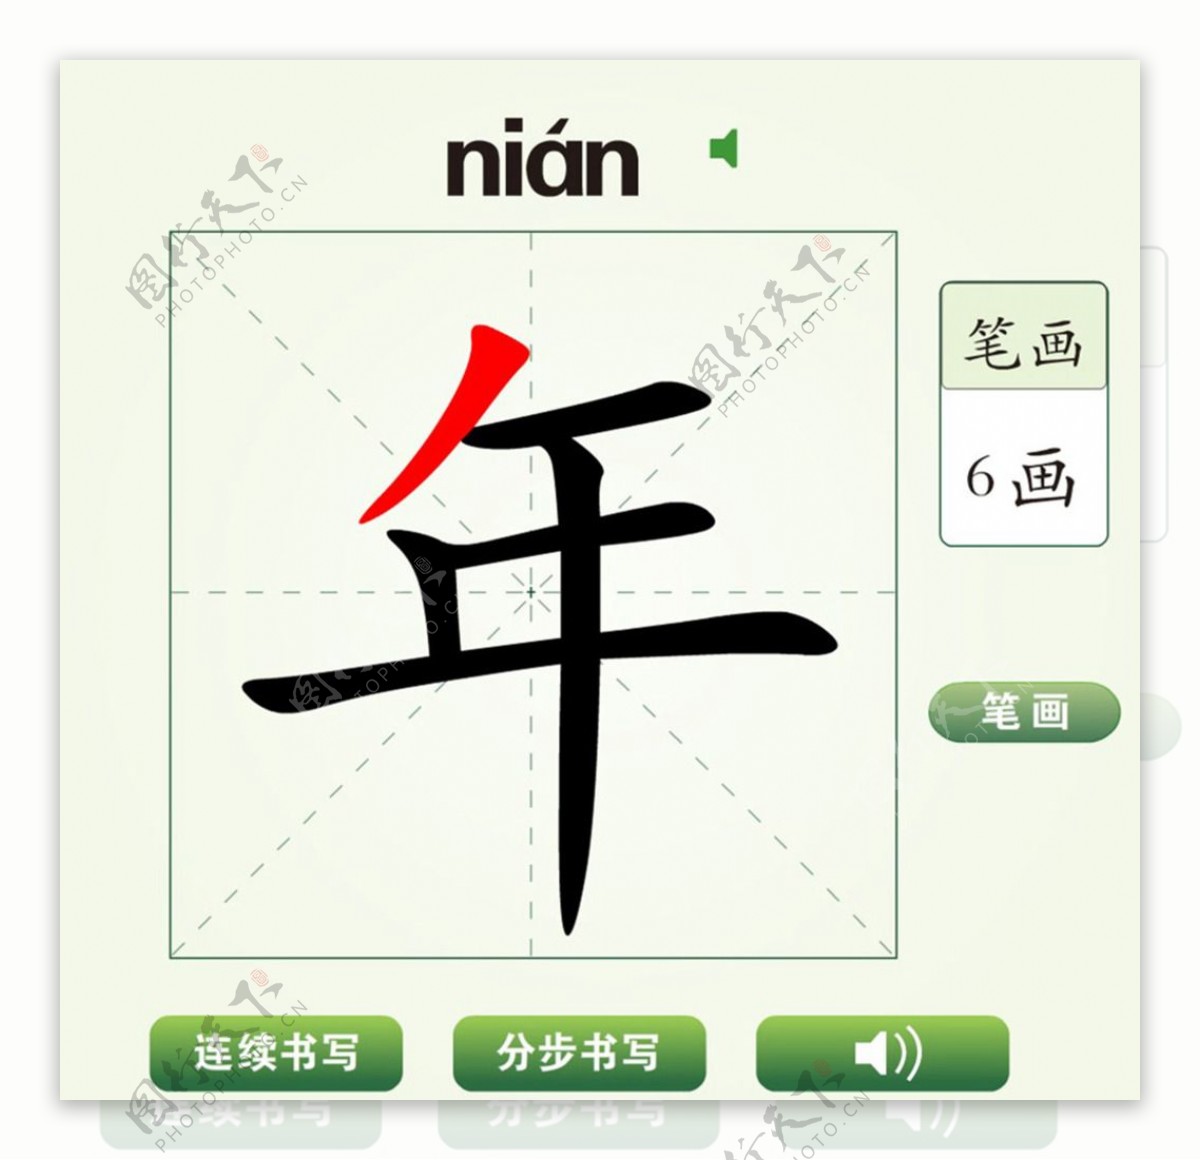 中国汉字年字笔画教学动画视频